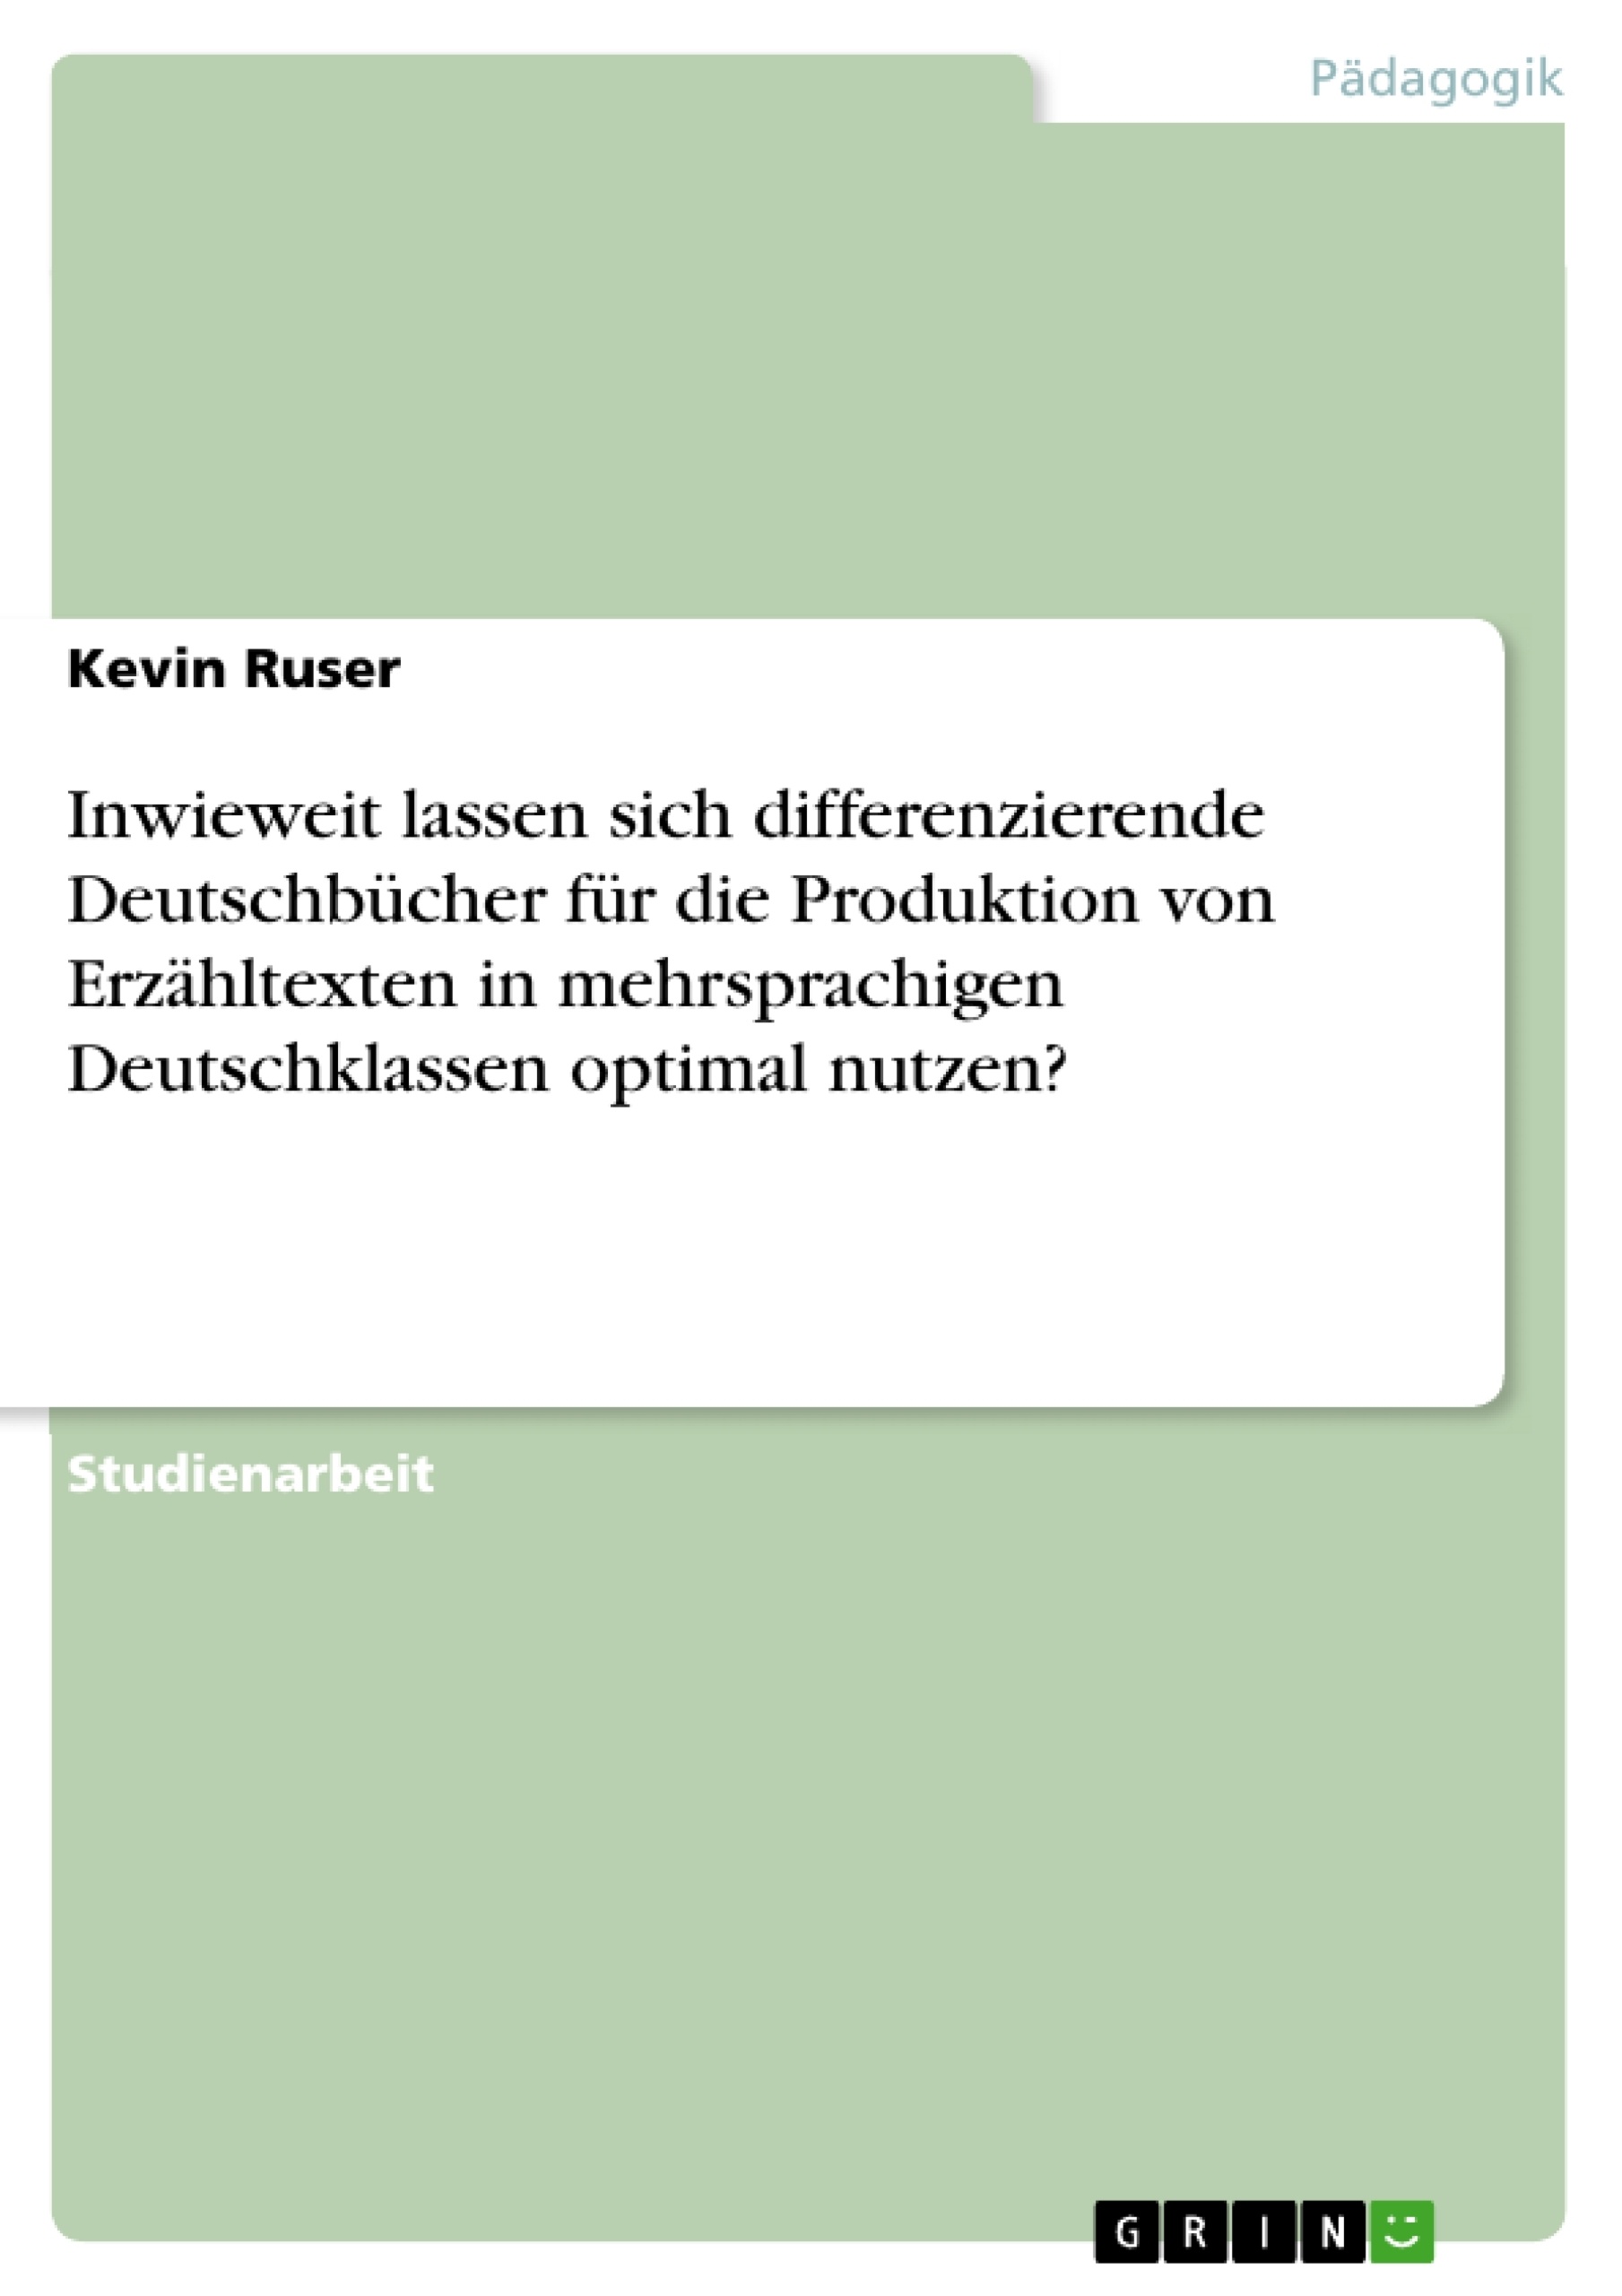 Title: Inwieweit lassen sich differenzierende Deutschbücher für die Produktion von Erzähltexten in mehrsprachigen Deutschklassen optimal nutzen?